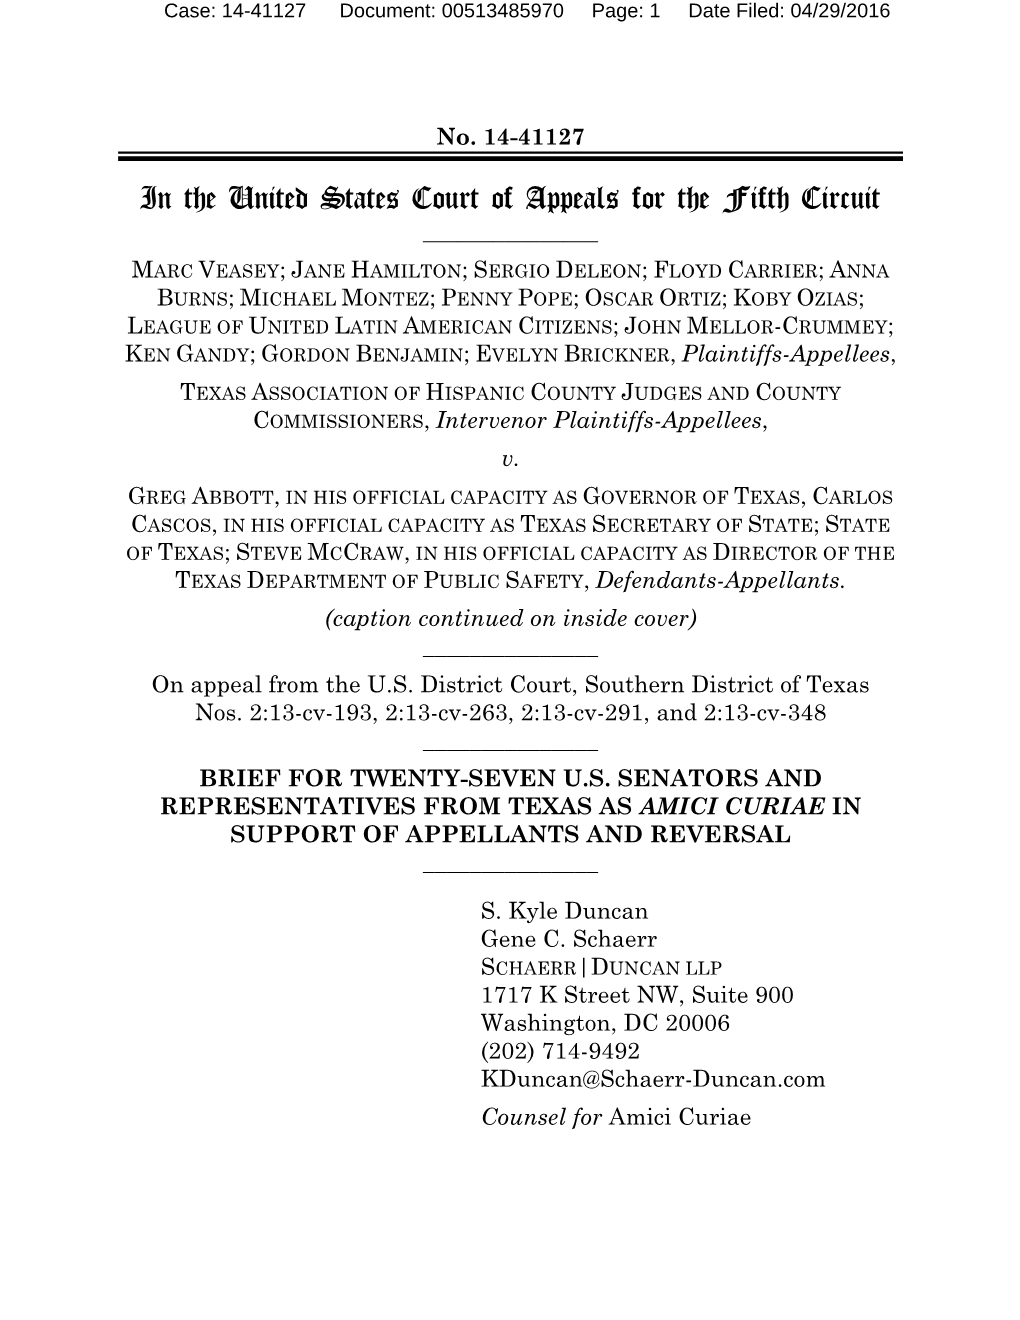 Brief for Amici Curiae Twenty-Seven U.S. Senators And